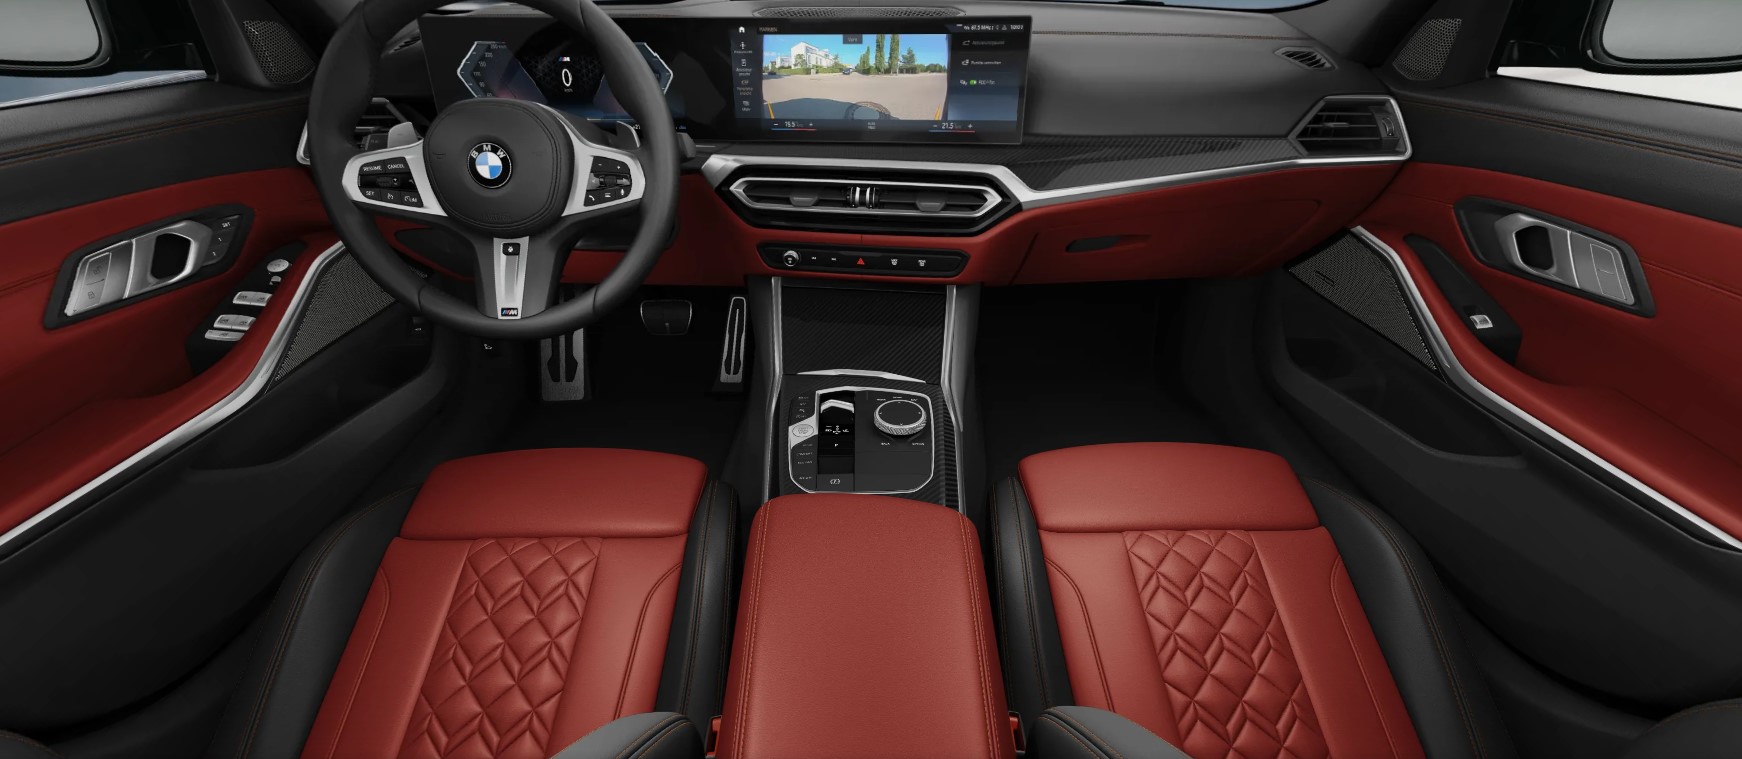 2023 BMW M340i Video Highlights Fiona Red Interior With Carbon Fiber Trim